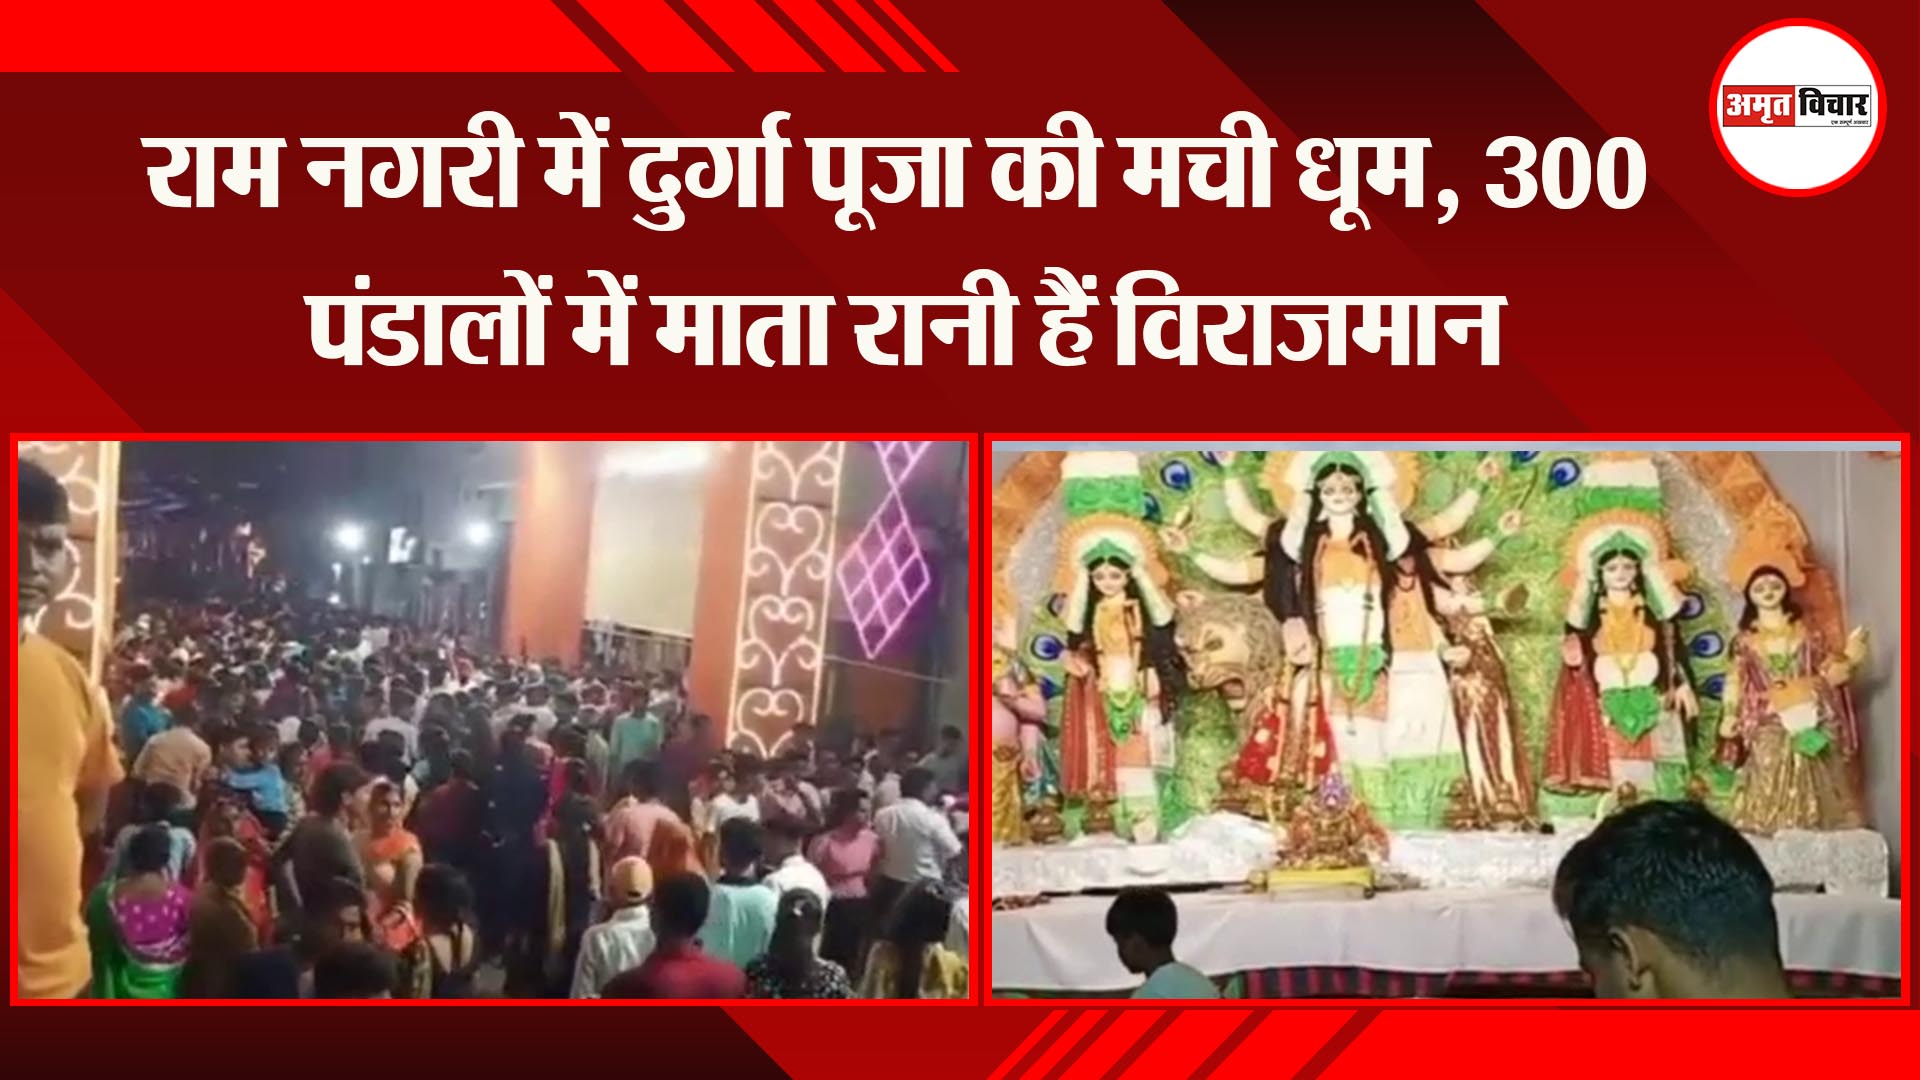 राम नगरी अयोध्या में दुर्गा पूजा की मची धूम, 300 पंडालों में माता रानी हैं विराजमान